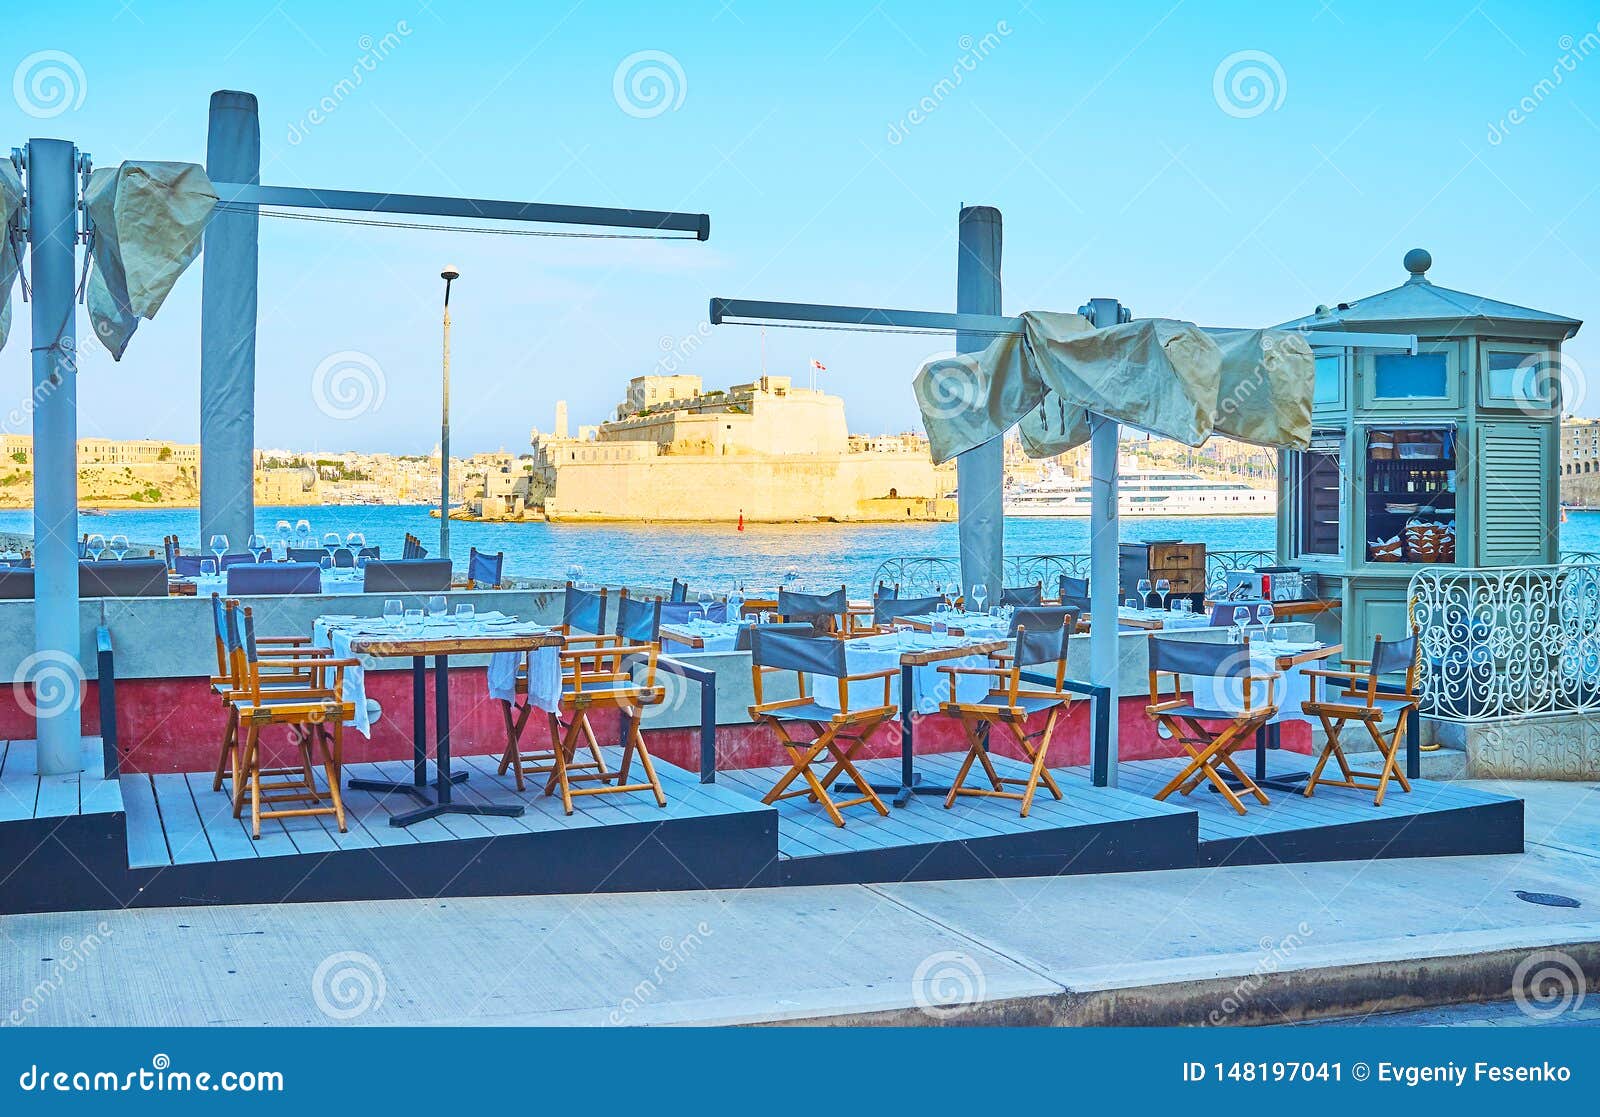 outdoor cafe in barriera wharf, valletta, malta